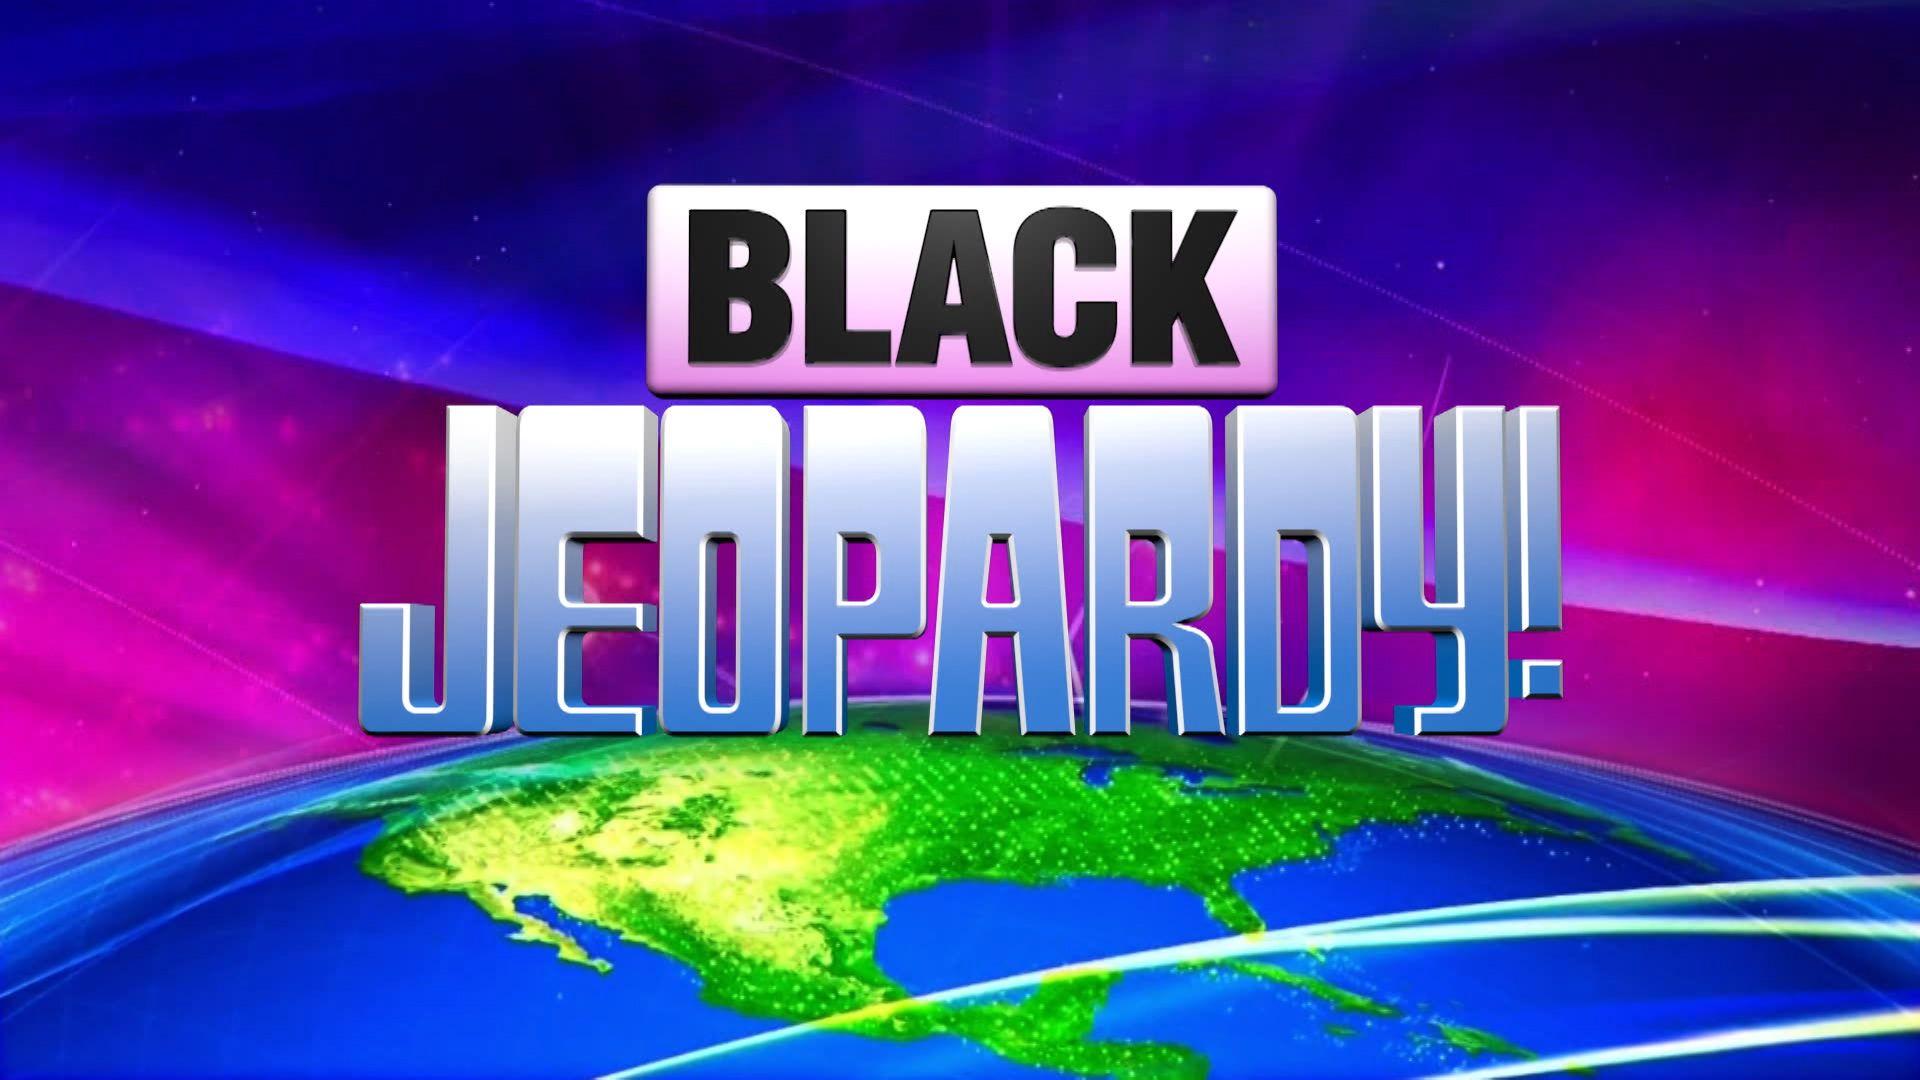 Jeopardy Game Show Logo - Black Jeopardy! | Logopedia | FANDOM powered by Wikia